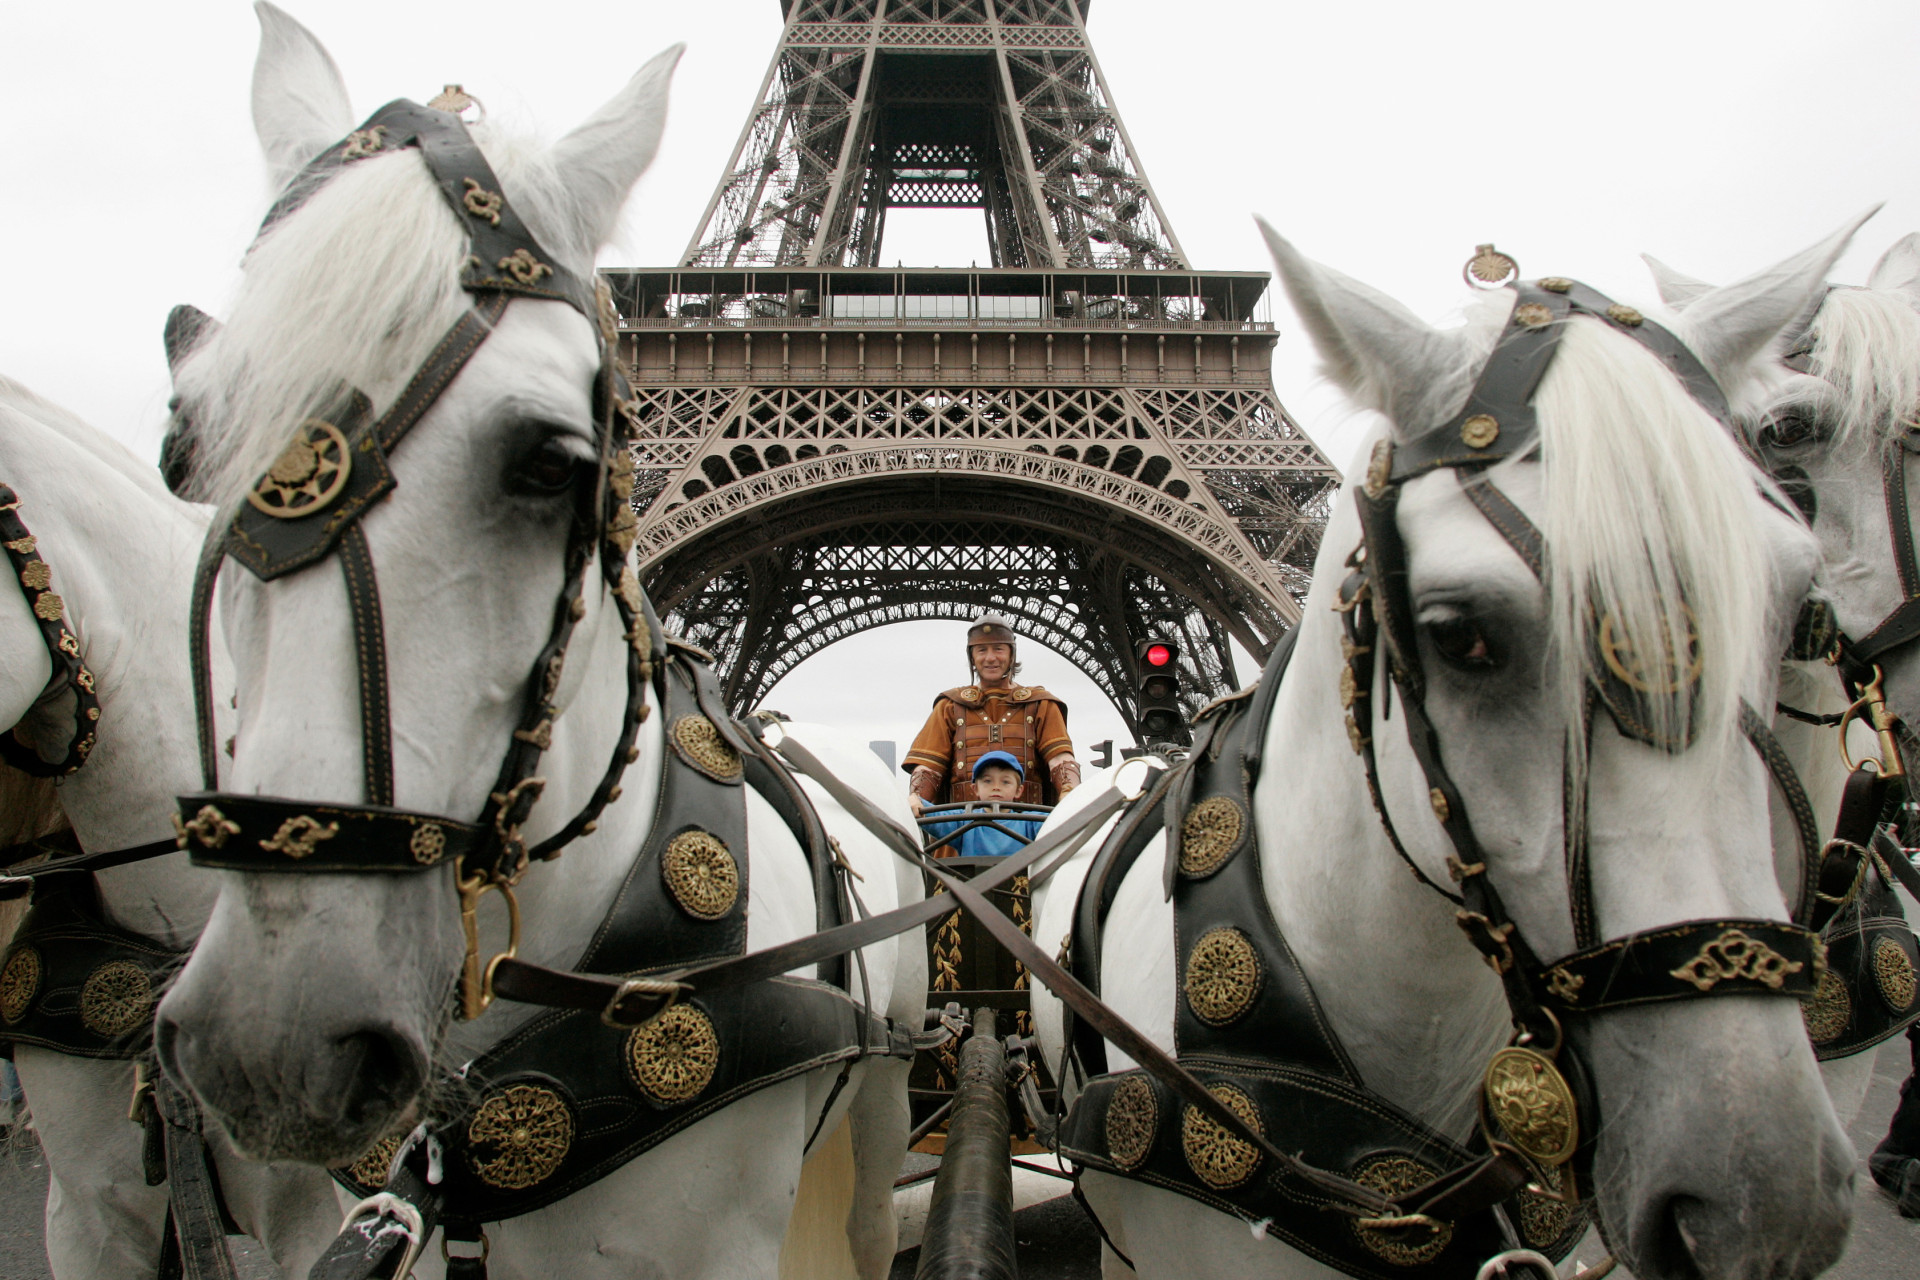 La Tour Eiffel sert très souvent de décor à différentes prestations. On peut voir ici l'acrobate Mario Luraschi et son fils réaliser des figures.<p>Tu pourrais aussi aimer:<a href="https://www.starsinsider.com/n/403133?utm_source=msn.com&utm_medium=display&utm_campaign=referral_description&utm_content=144117v2"> Royauté: ils entreprennent des carrières surprenantes</a></p>